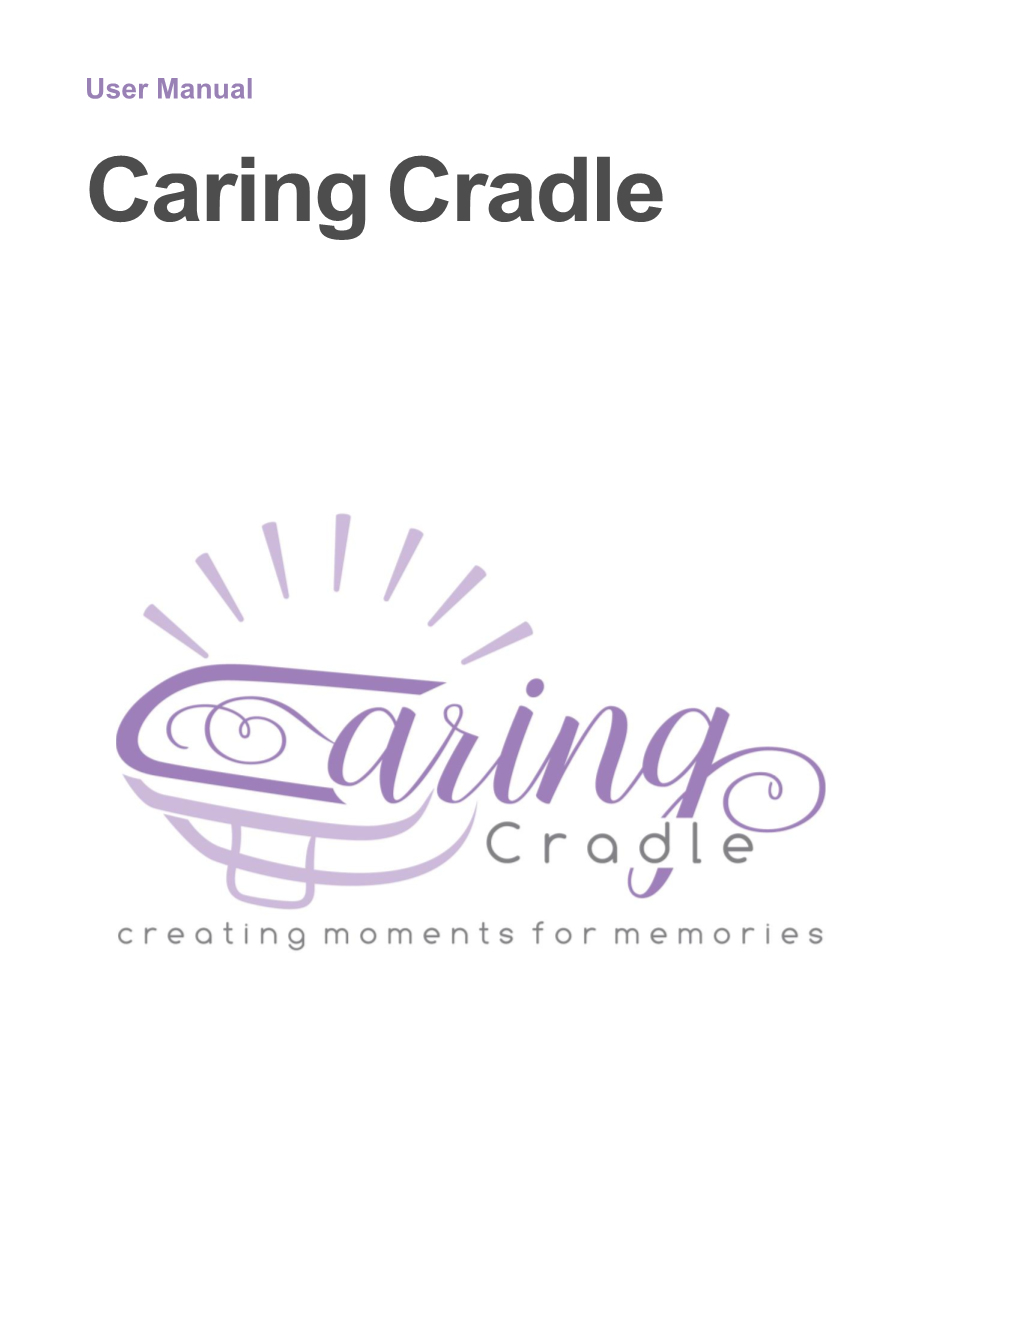 User Manual Caring Cradle